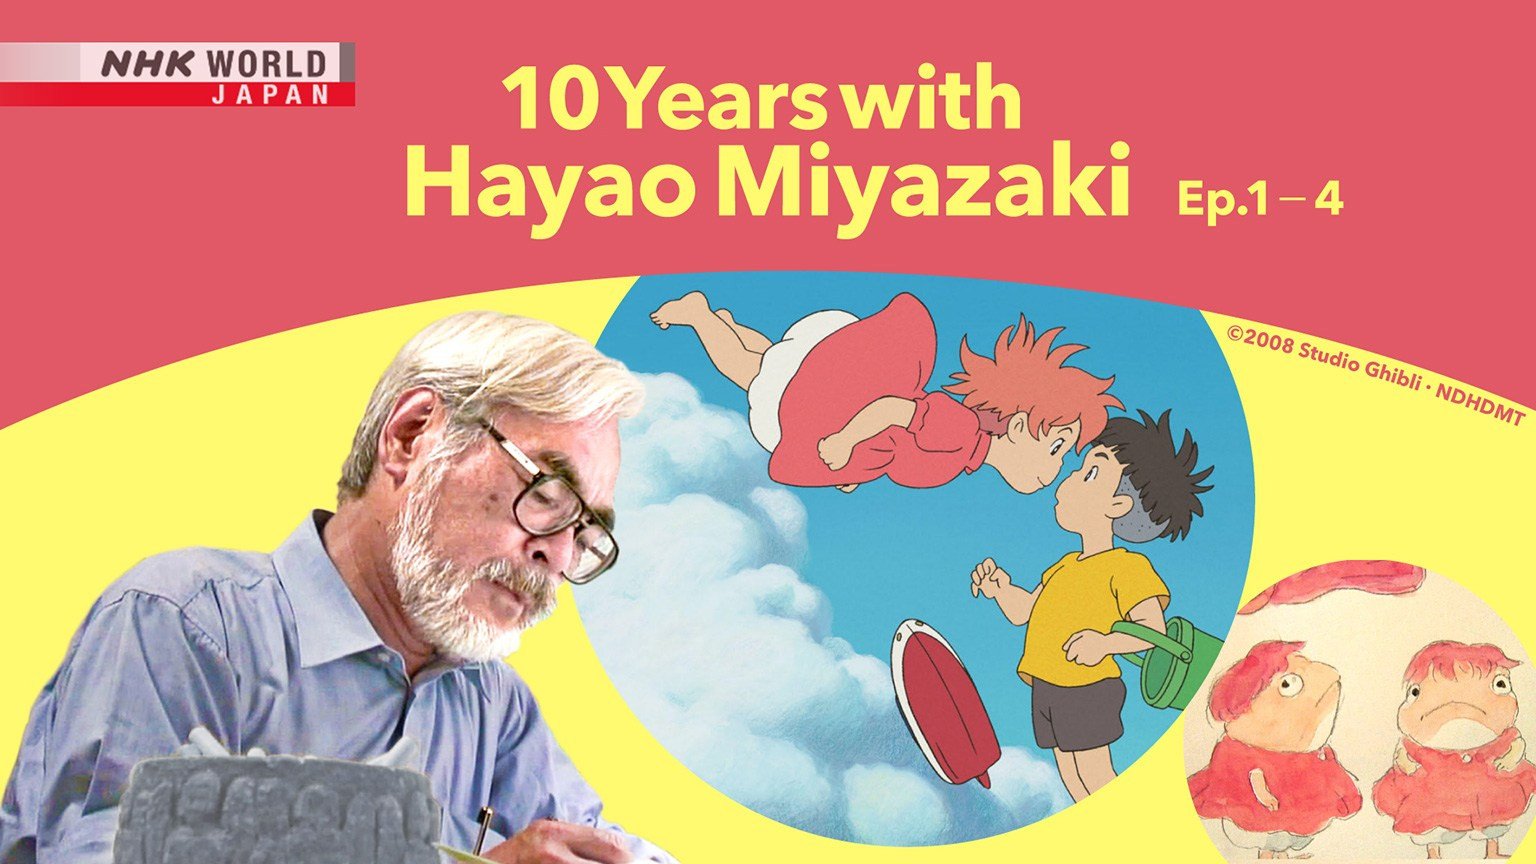 10 Years With Hayao Miyazaki NHK Poster